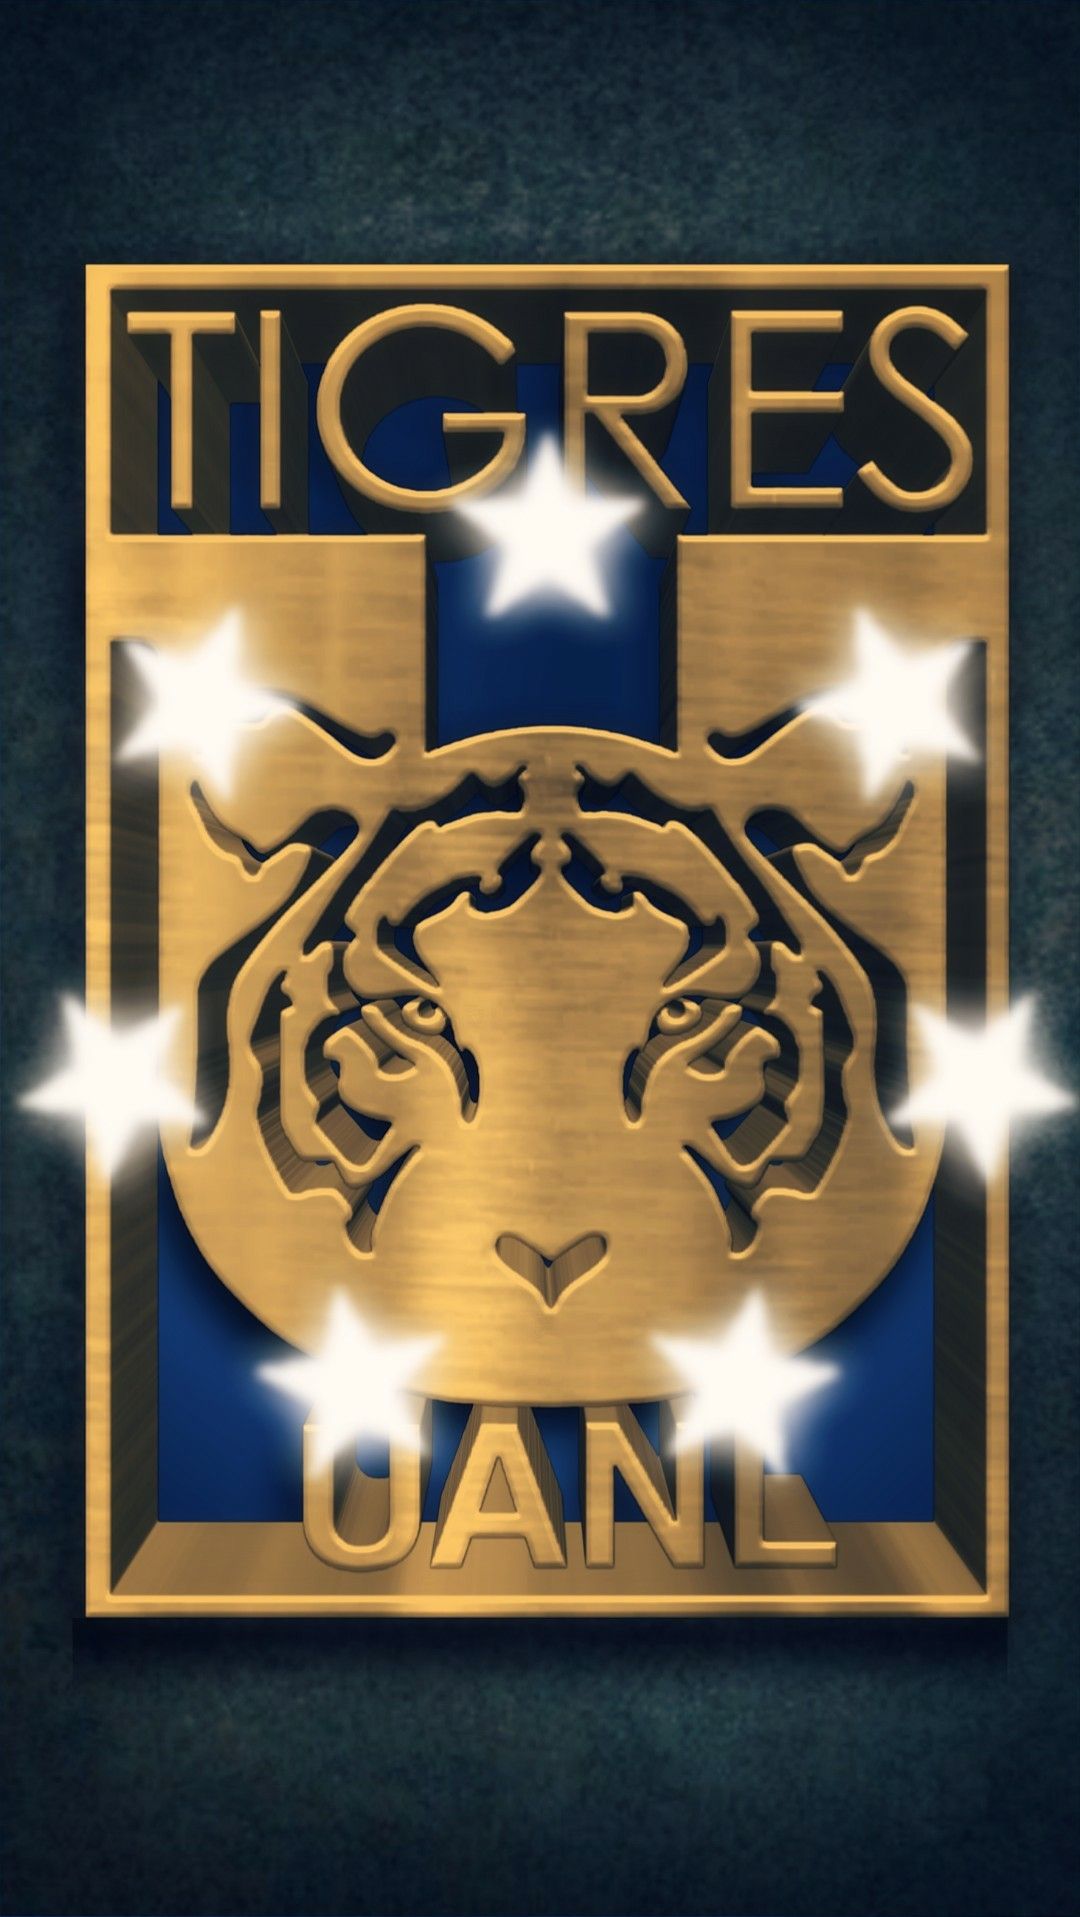 Logo De Tigres De La Uanl - HD Wallpaper 